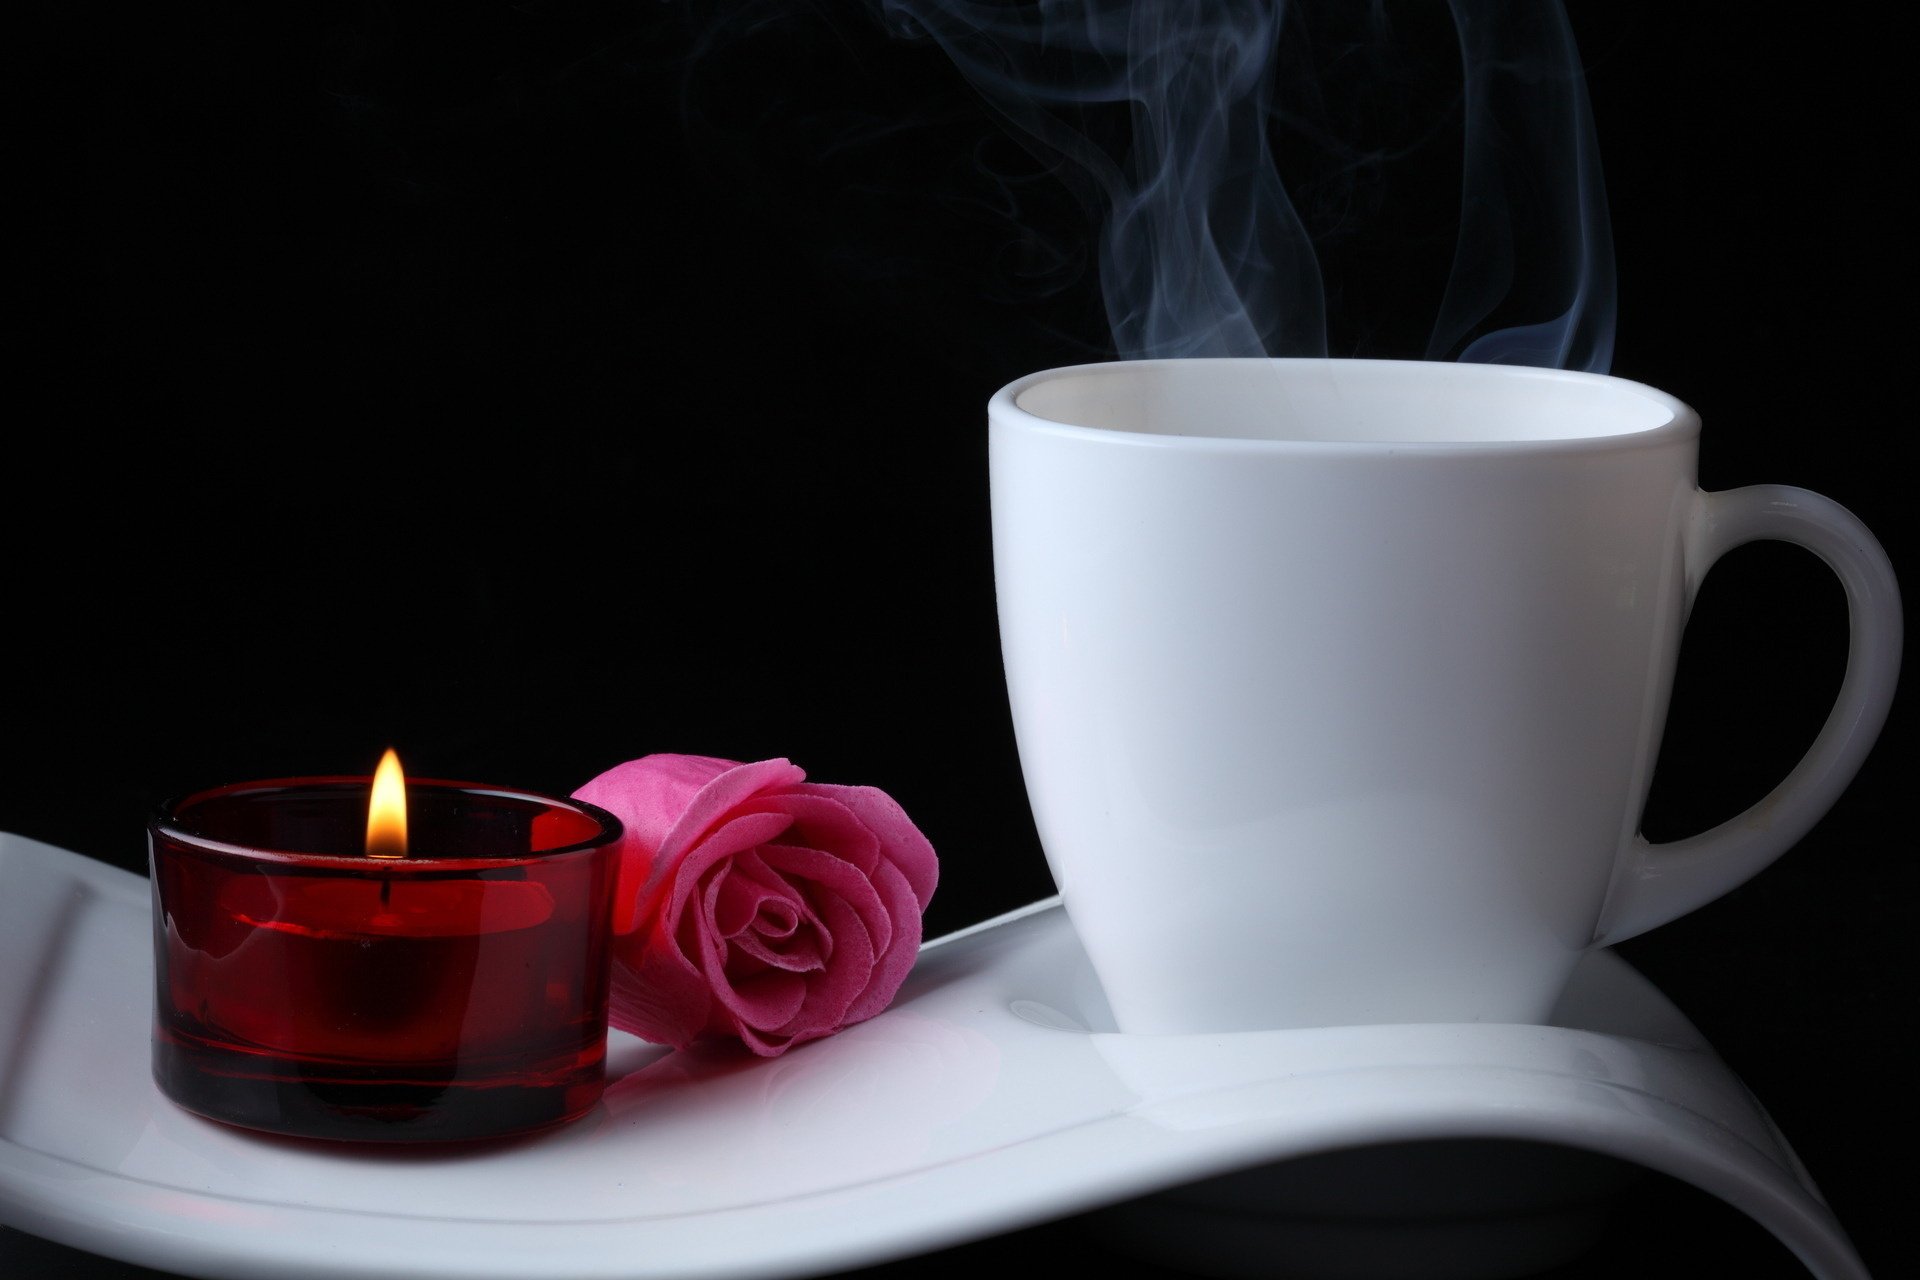 cywet gorąca kawa kawa róża kwiaty świeca róża kubek para zapach ogień czarne tło ciemne tło podstawka kubek